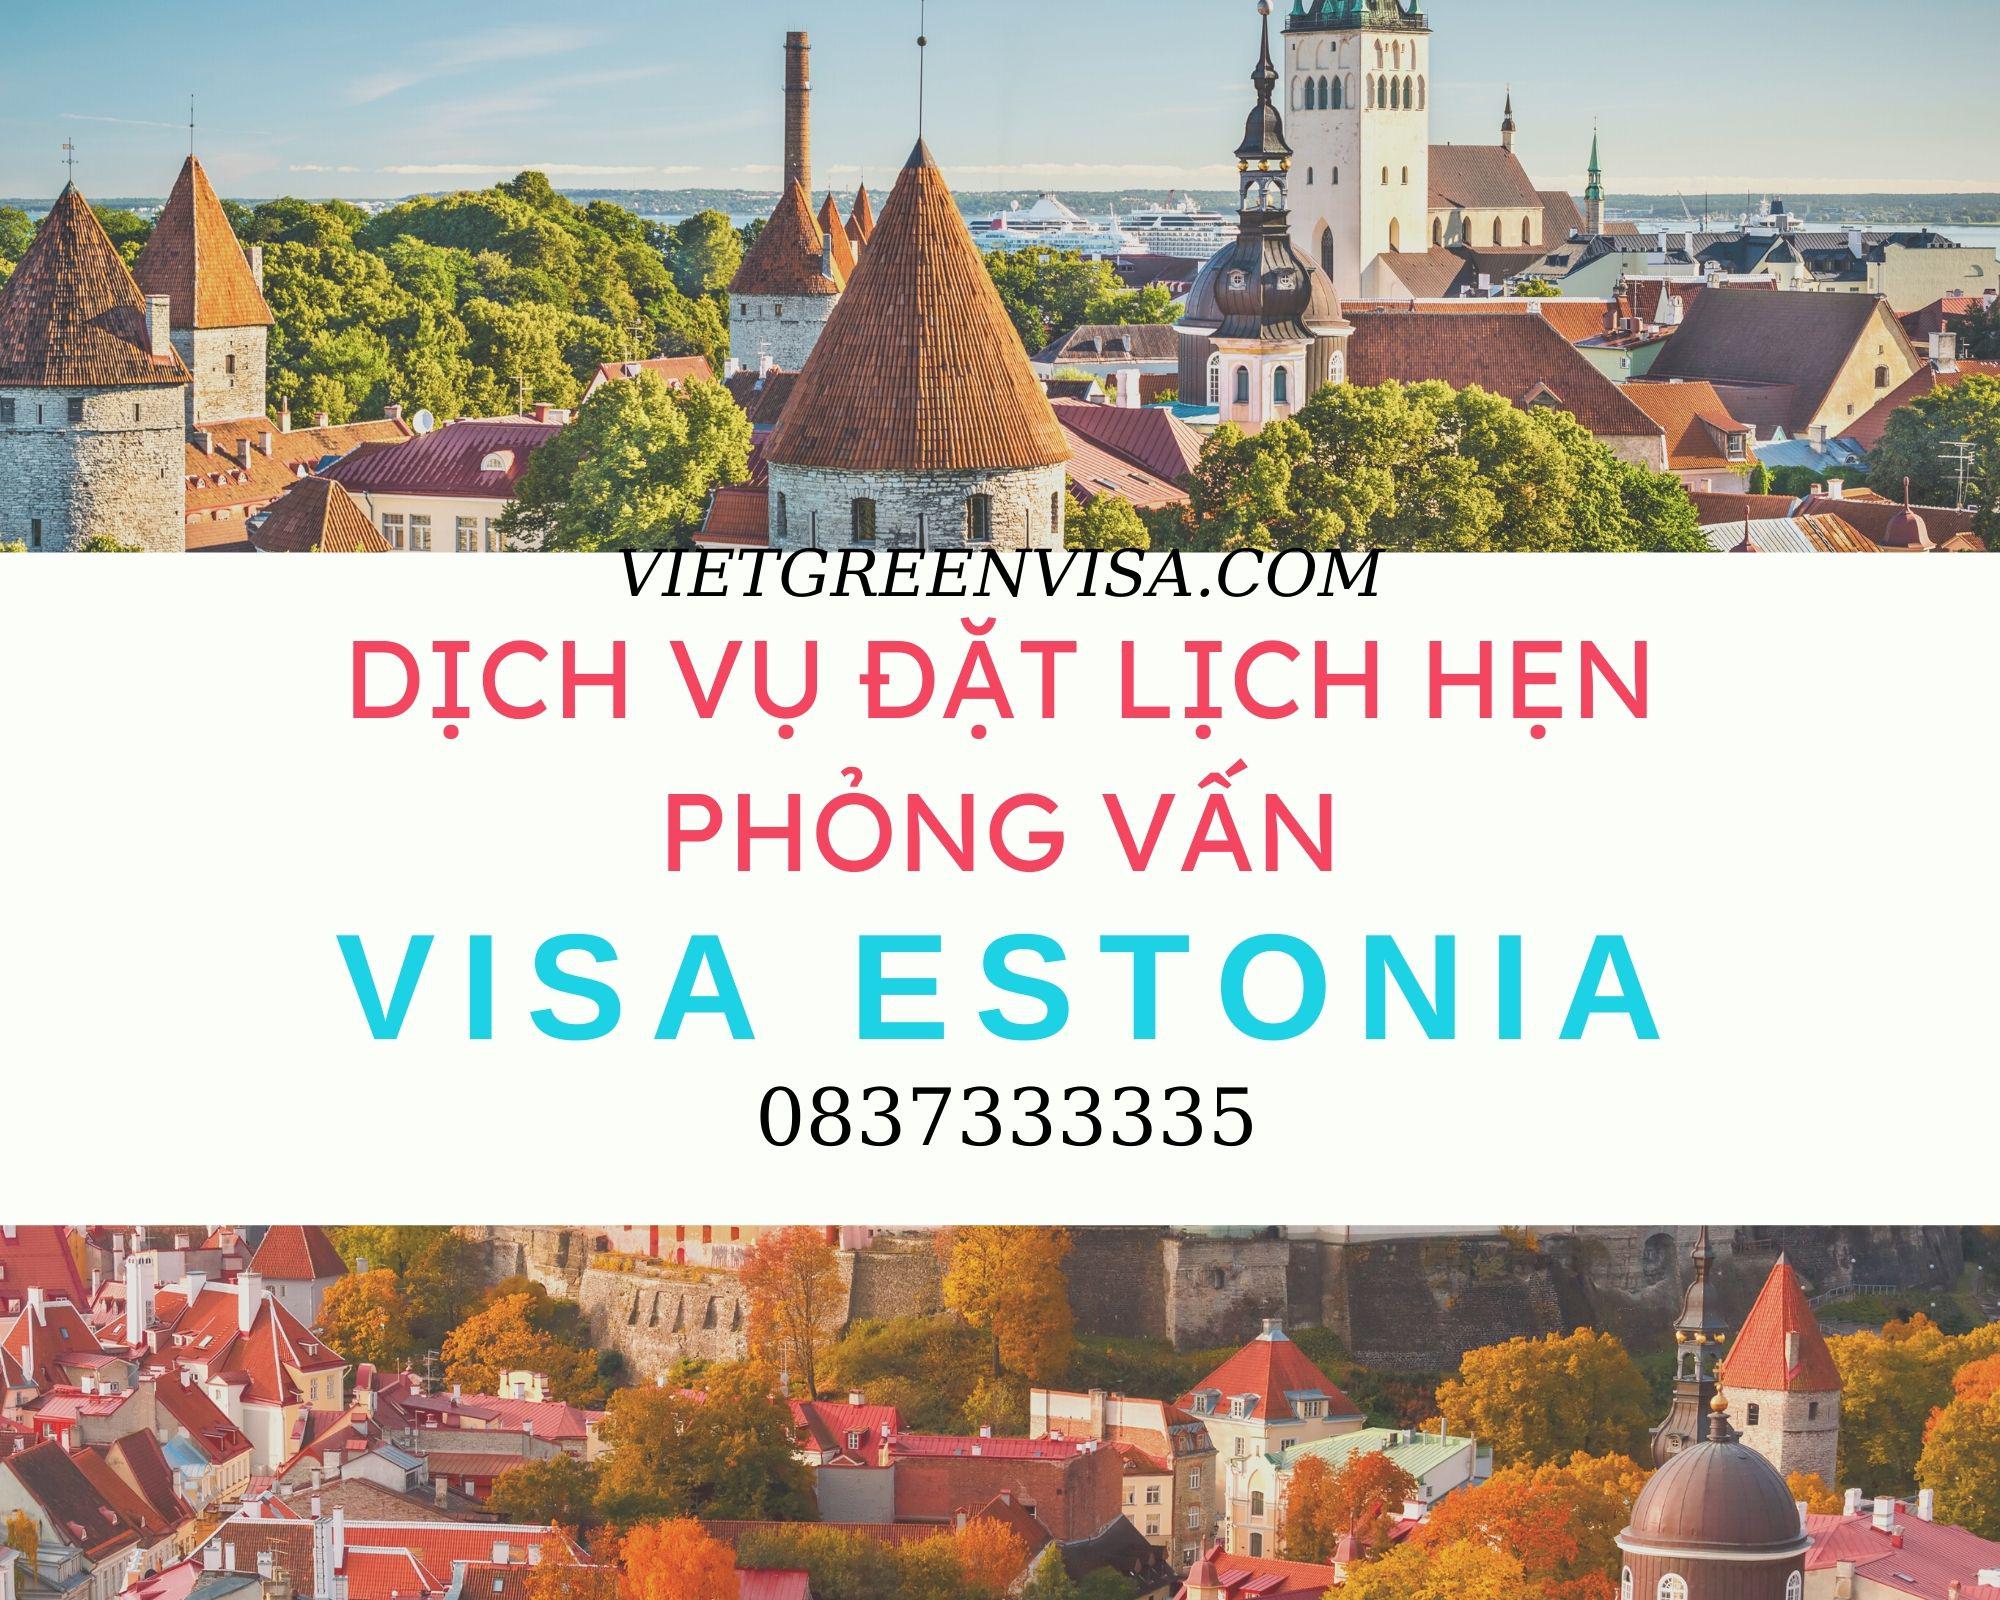 Dịch vụ hỗ trợ đặt lịch hẹn phỏng vấn visa Estonia